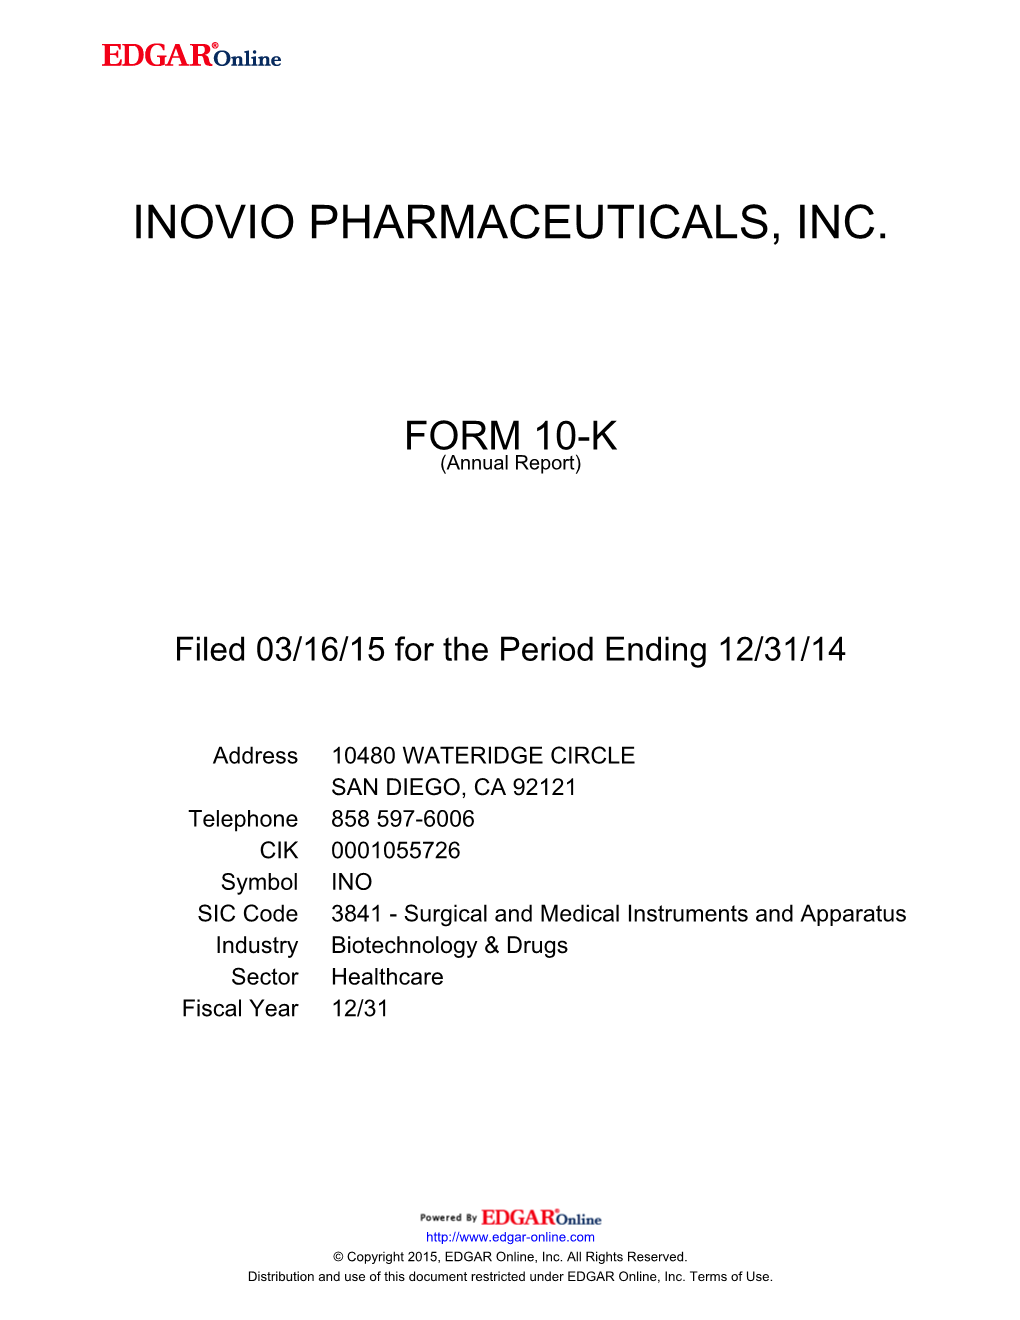 Inovio Pharmaceuticals, Inc